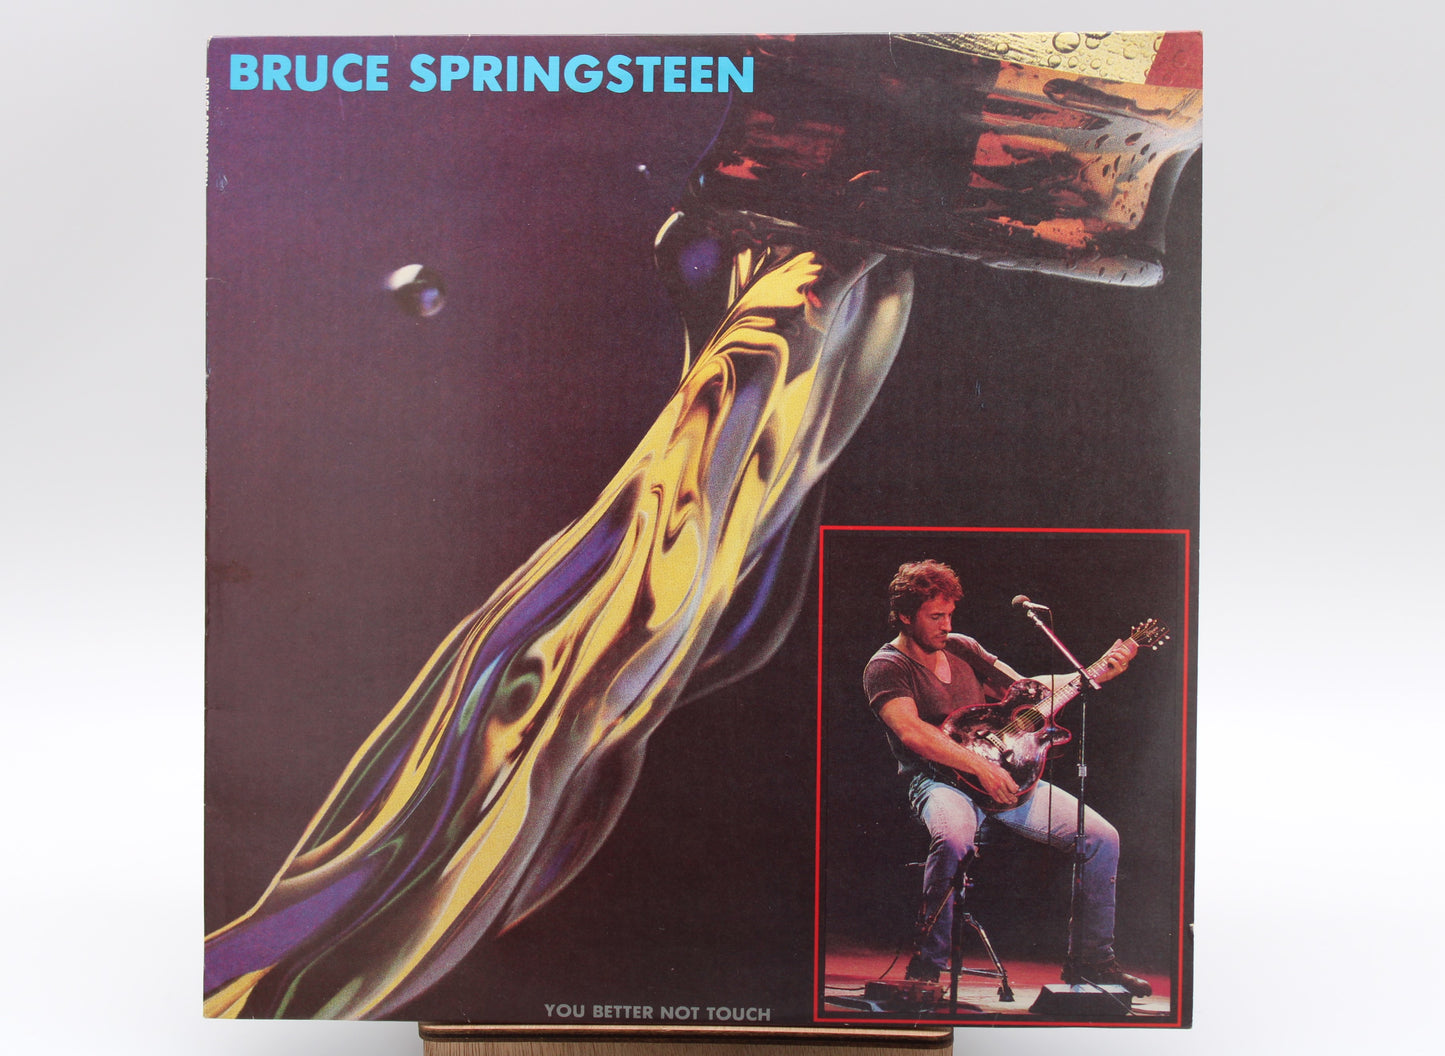 Bruce Springsteen - You Better Not Touch - Unofficial Bootleg Vinyl LP - Live 1986 Concert